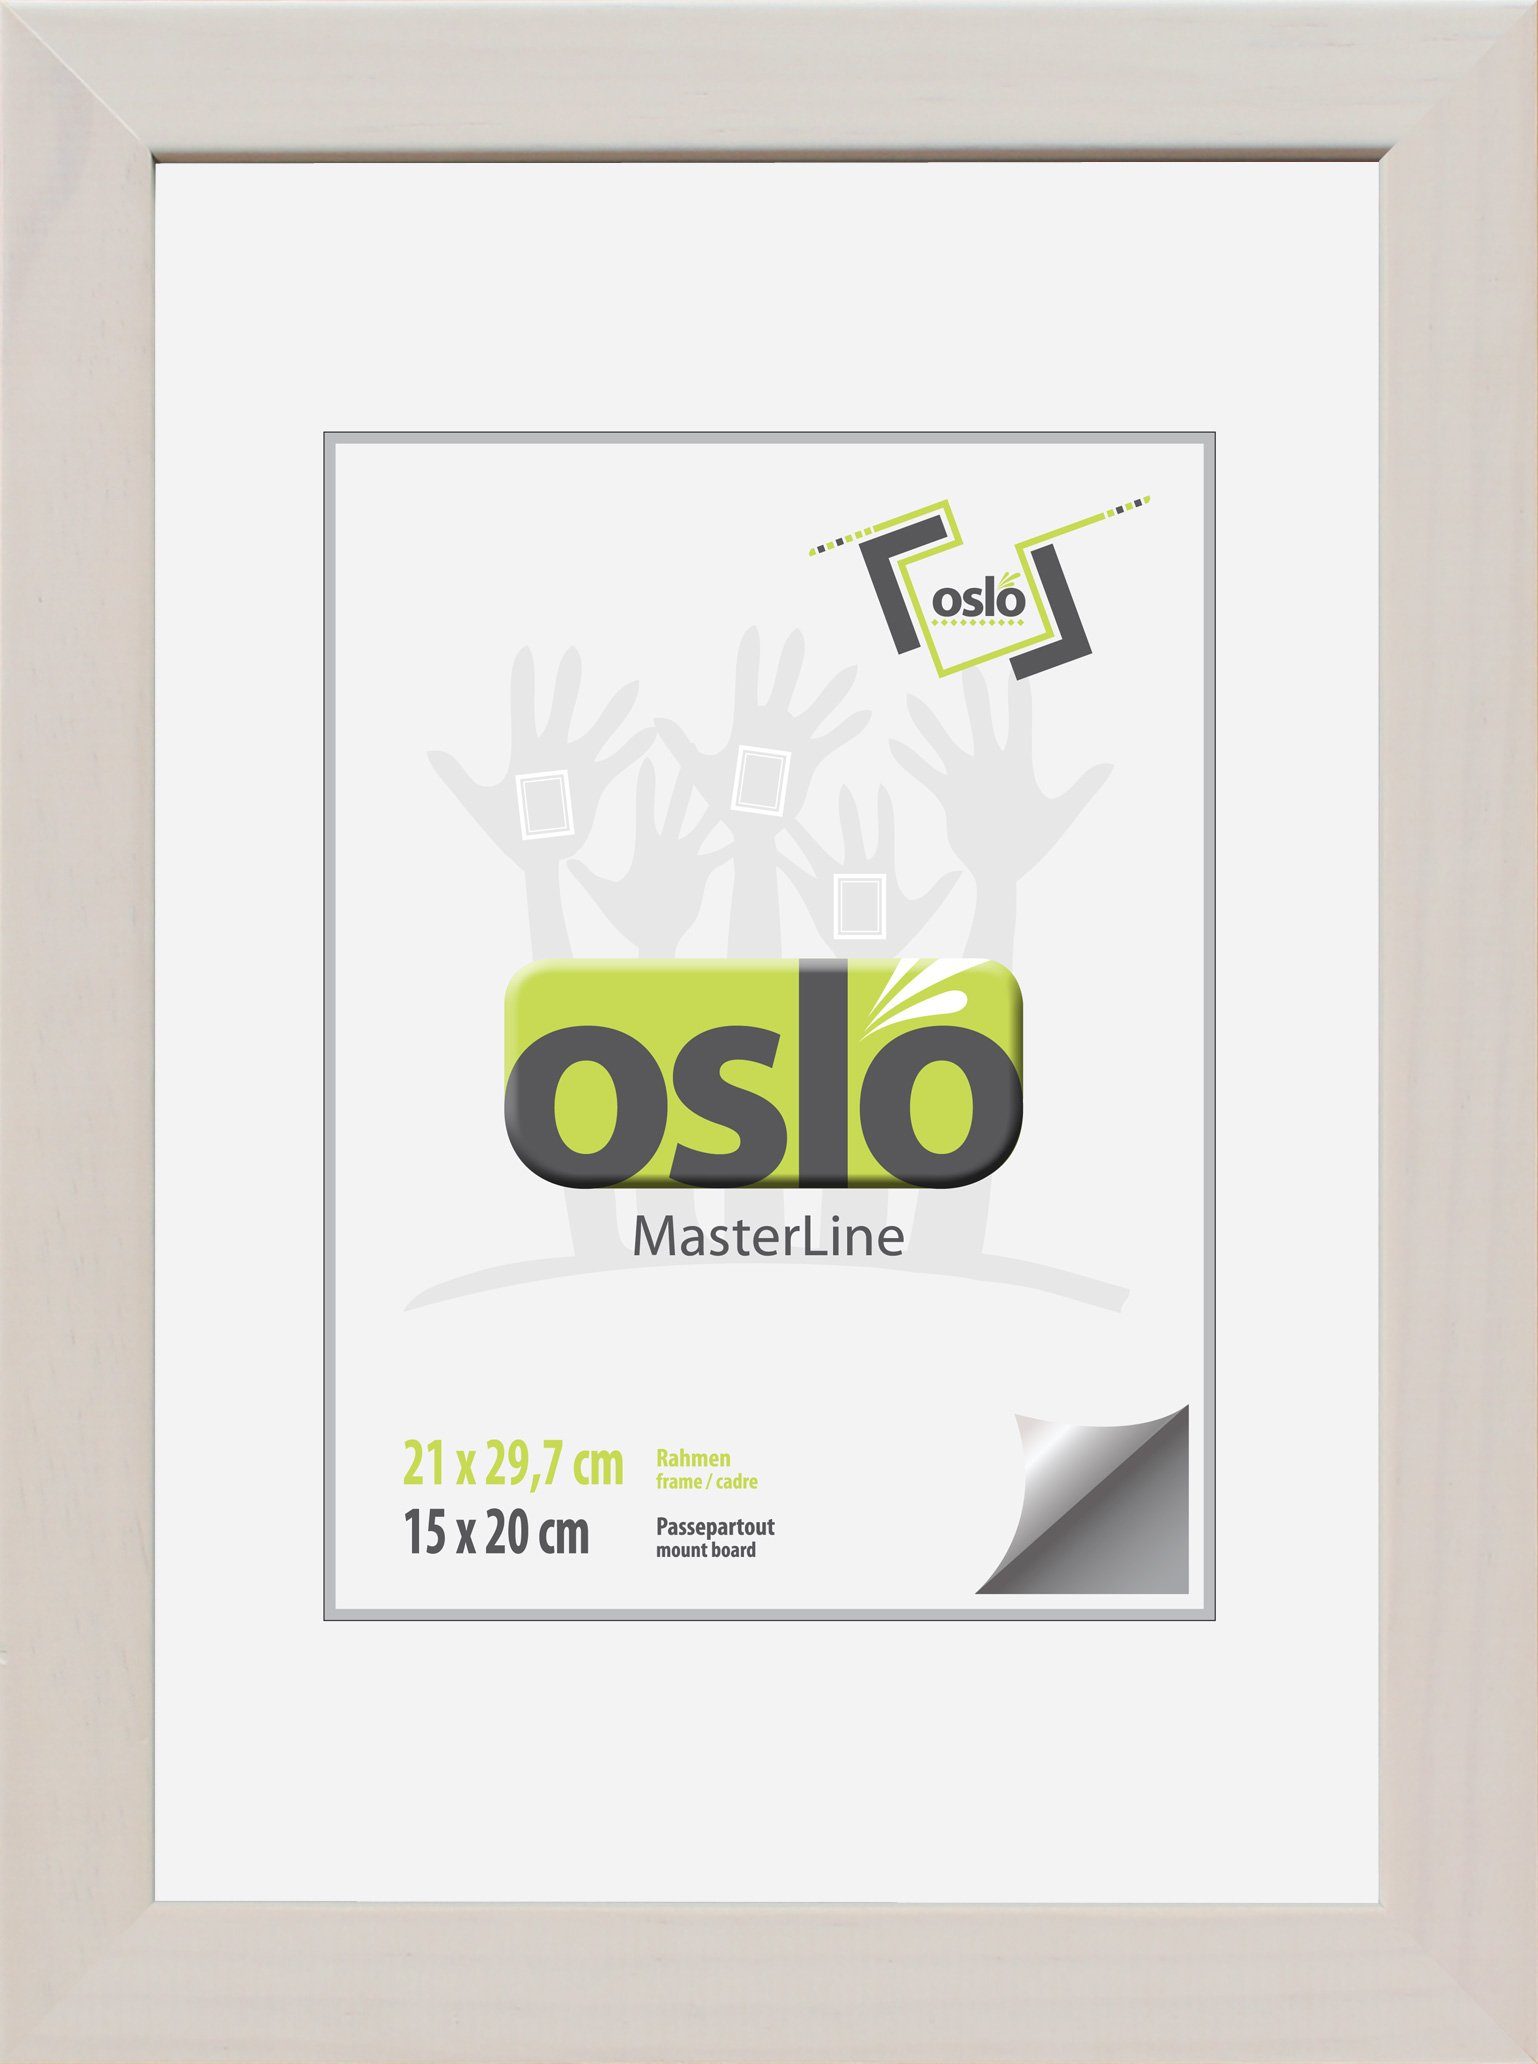 Oslo MasterLine Einzelrahmen Bilderrahmen 21 x 30 cm Urkundenformat DIN A4 exakt 21 x 29,7 cm, Urkundenrahmen Holz Farbe weiß gekalkt Echtglas stabiler Aufsteller